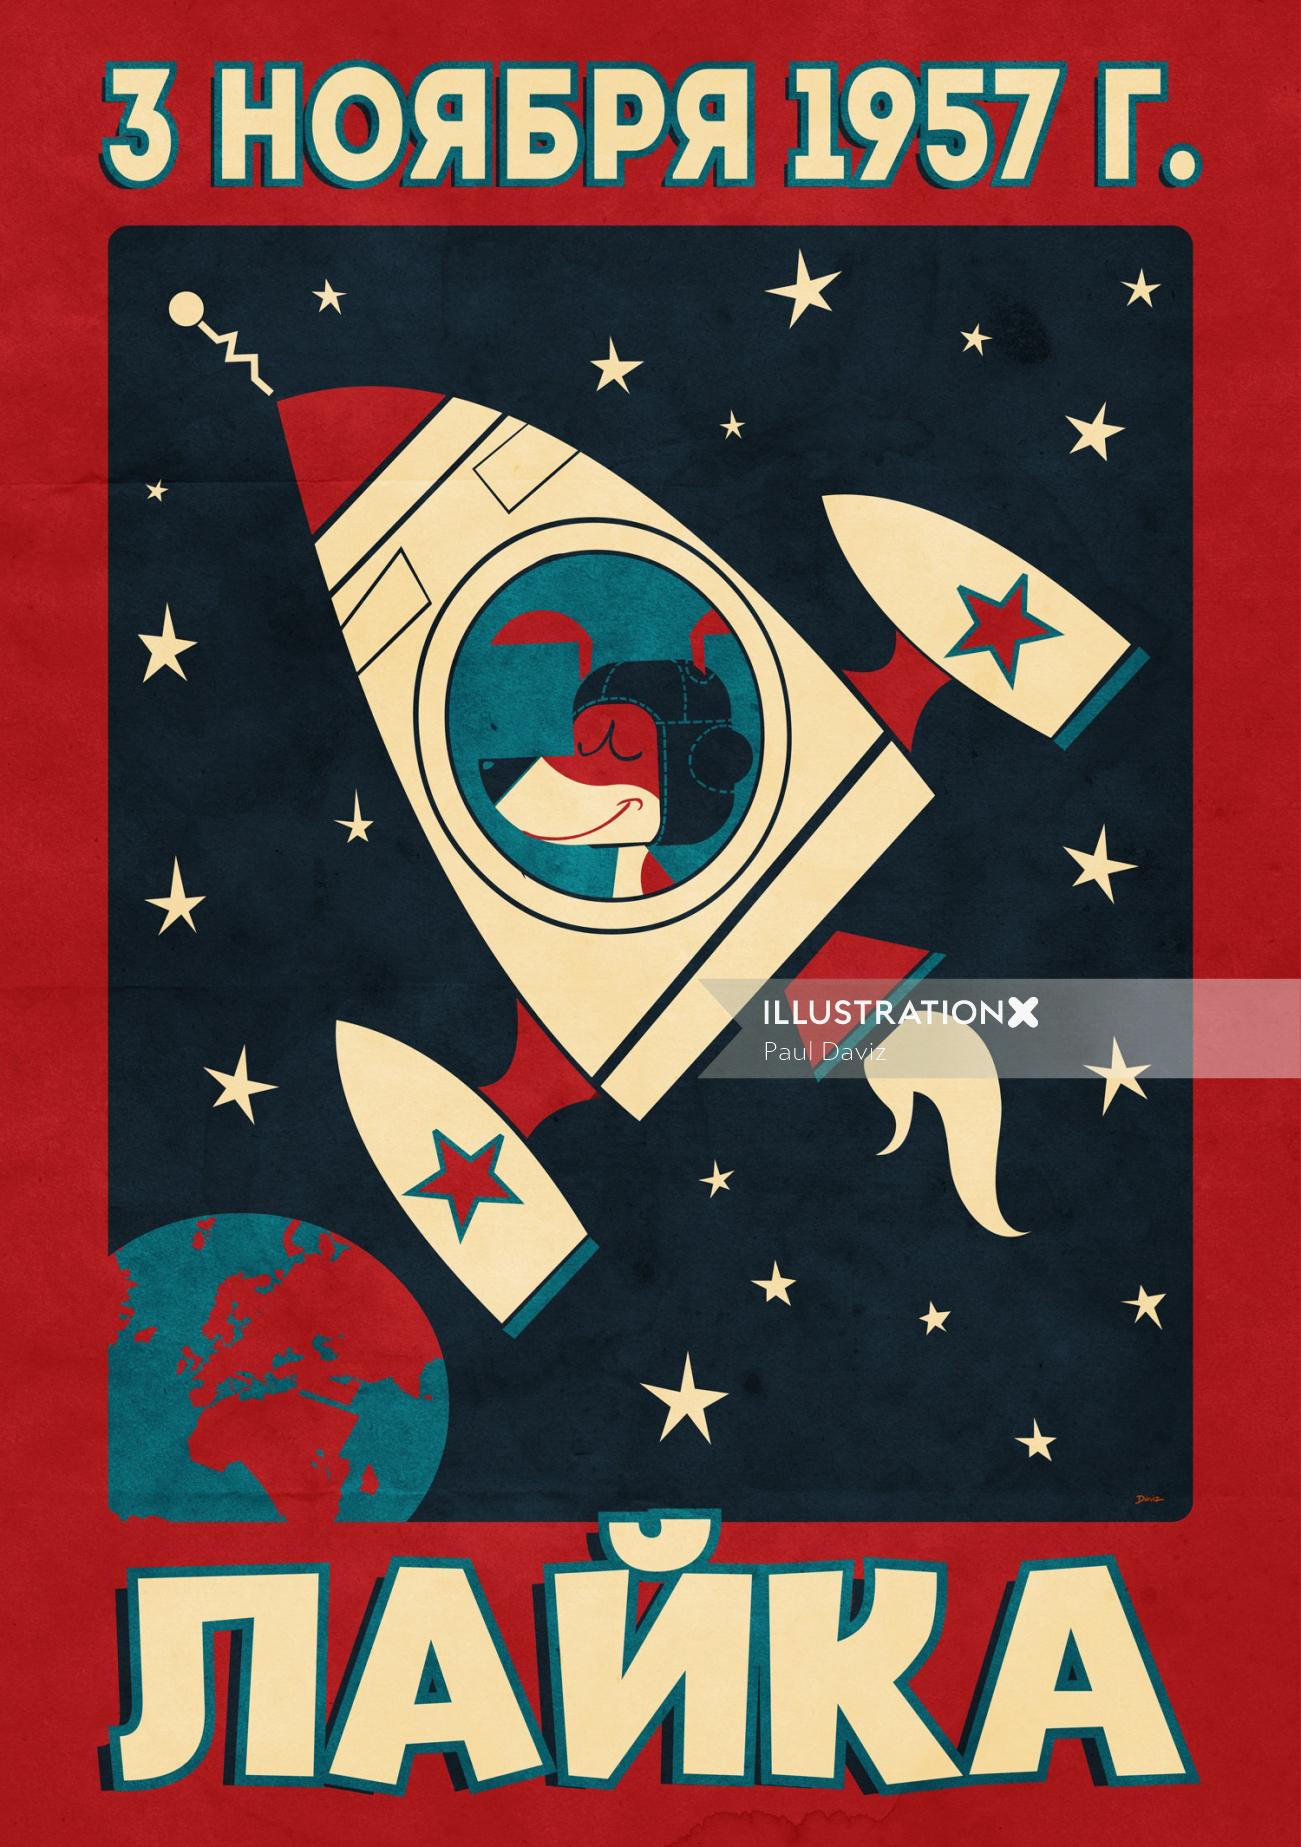 Children graphic rocket in space
